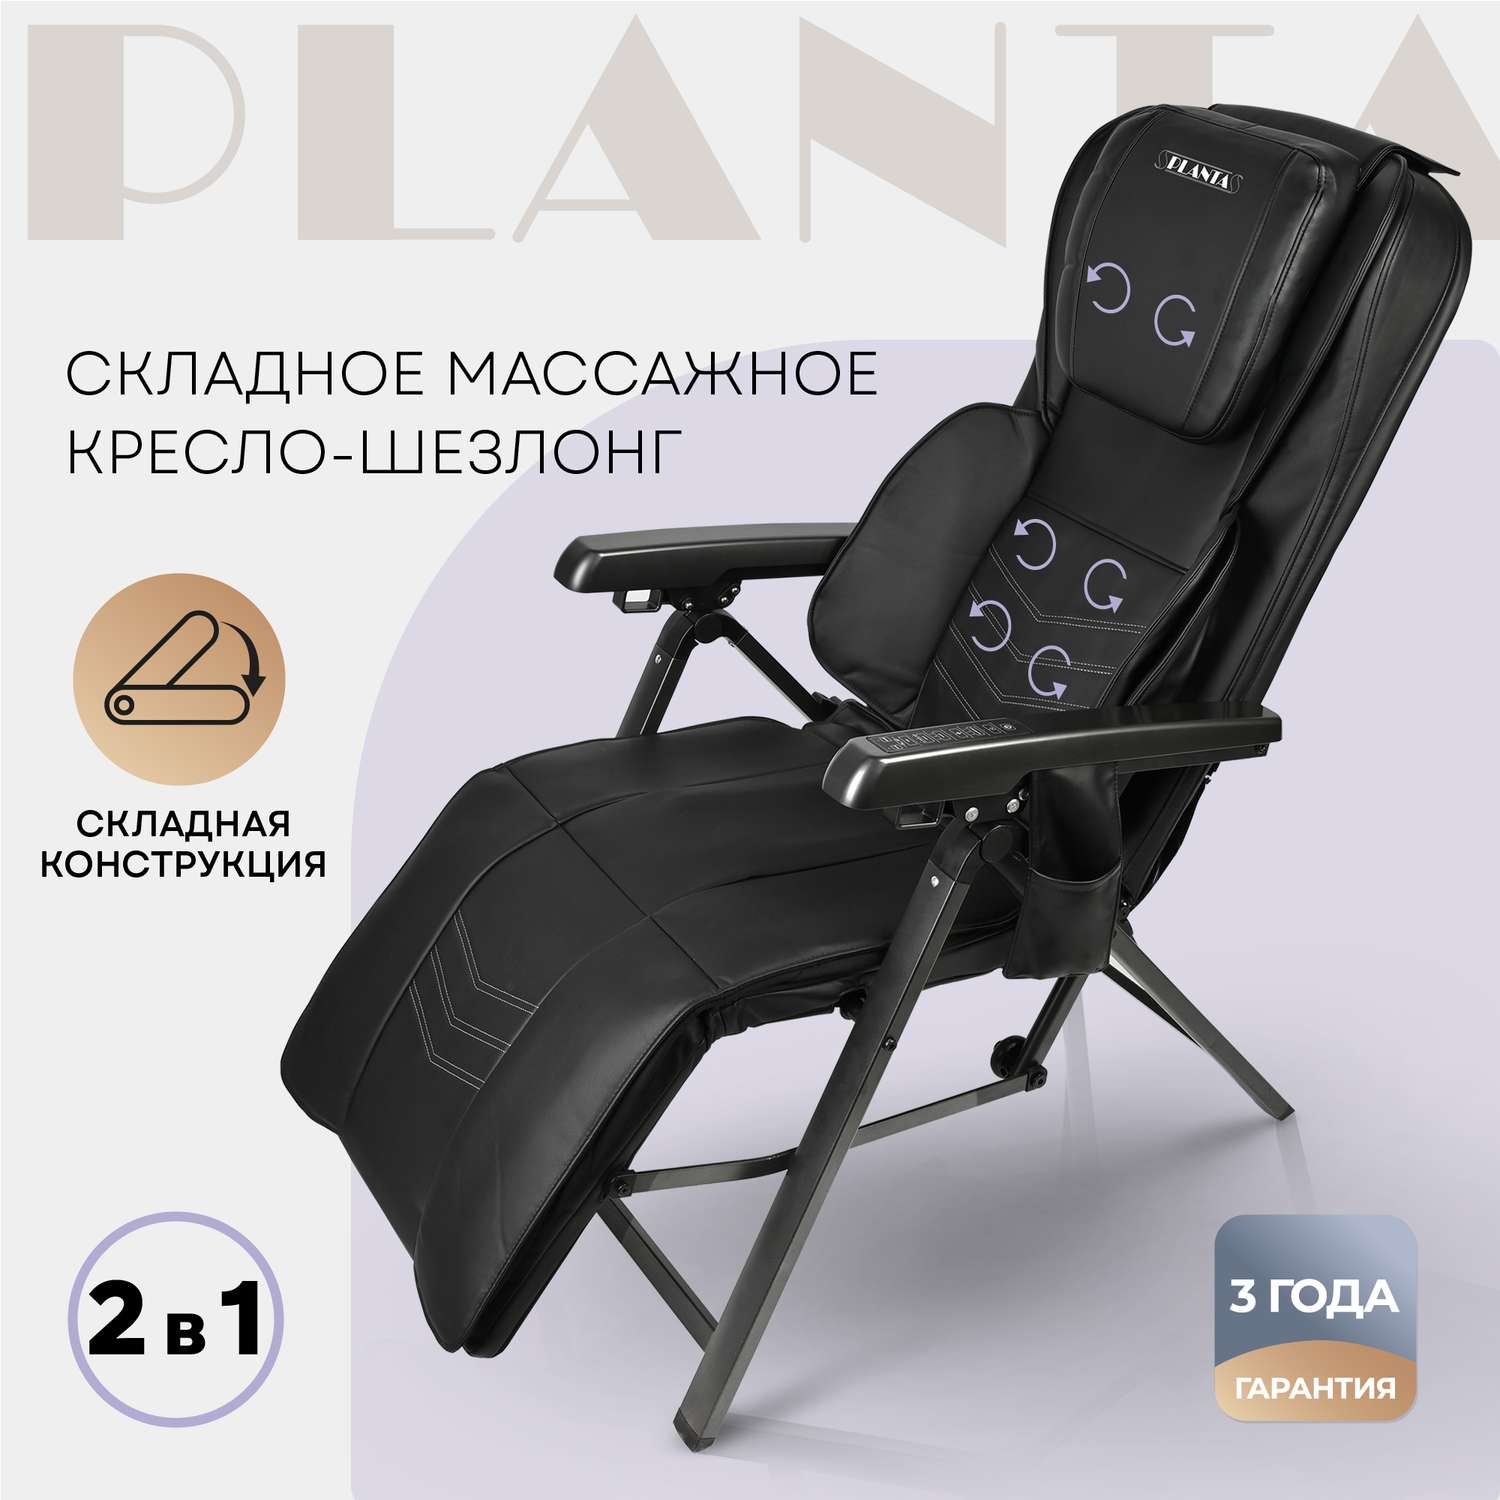 Складное массажное кресло Planta шезлонг 2 в 1 MC-2500 с подогревом - фото 1